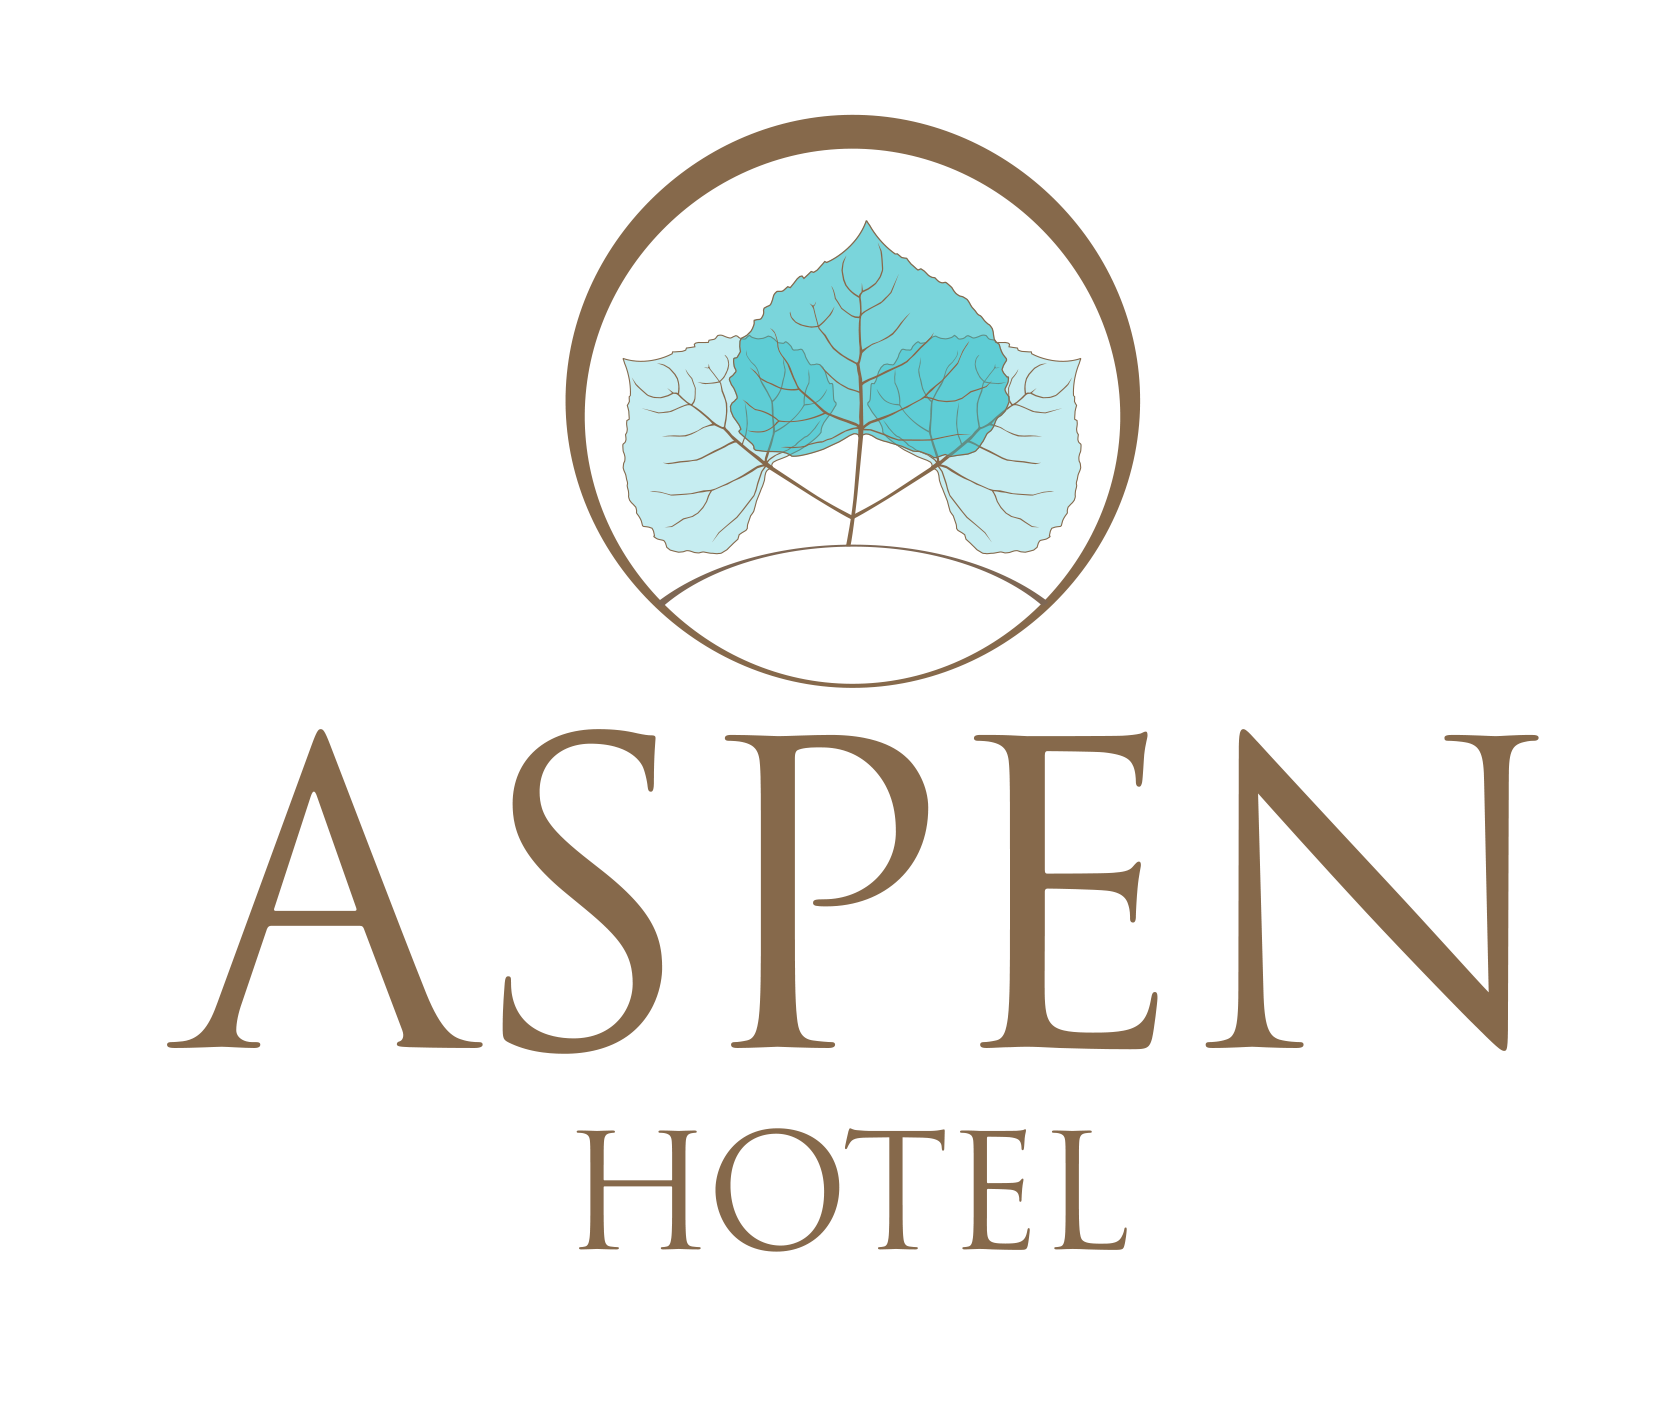 Aspen Hotel Kaleiçi, Antalya, Main Logo